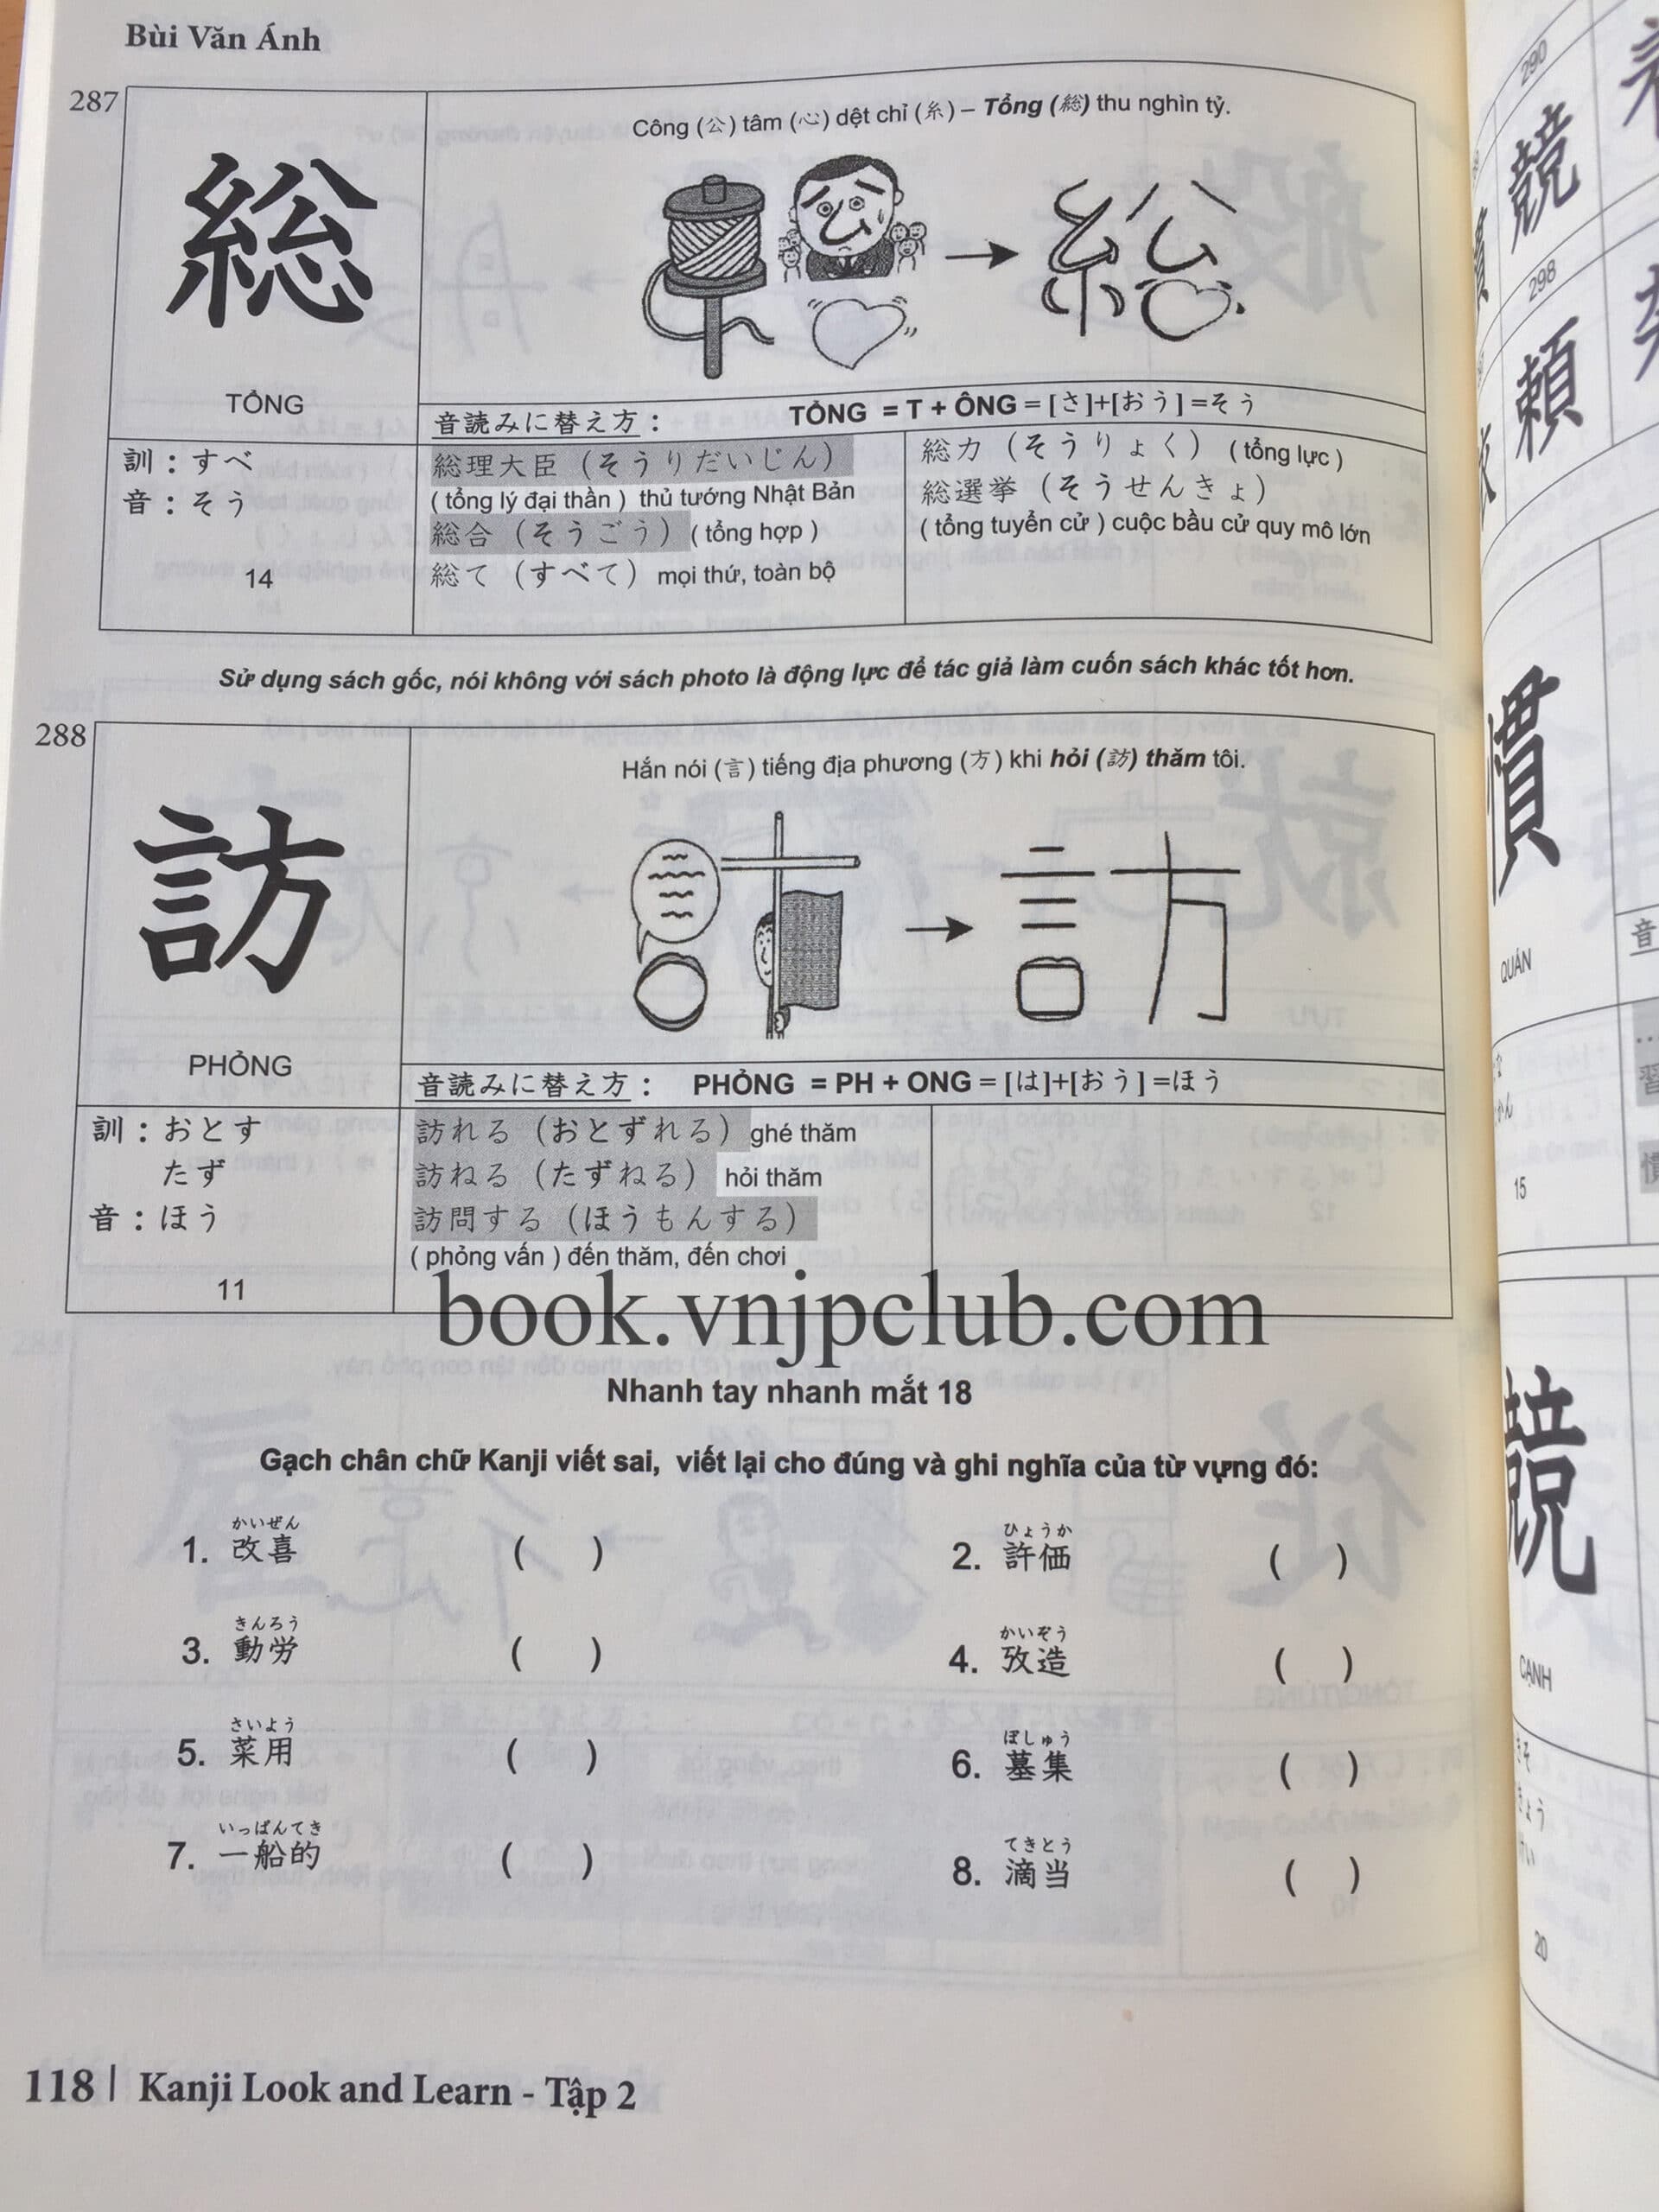 Kanji Look And Learn N3.2 – Sách Bài Học Tập 2 - Sách Tiếng Nhật Vnjpbook